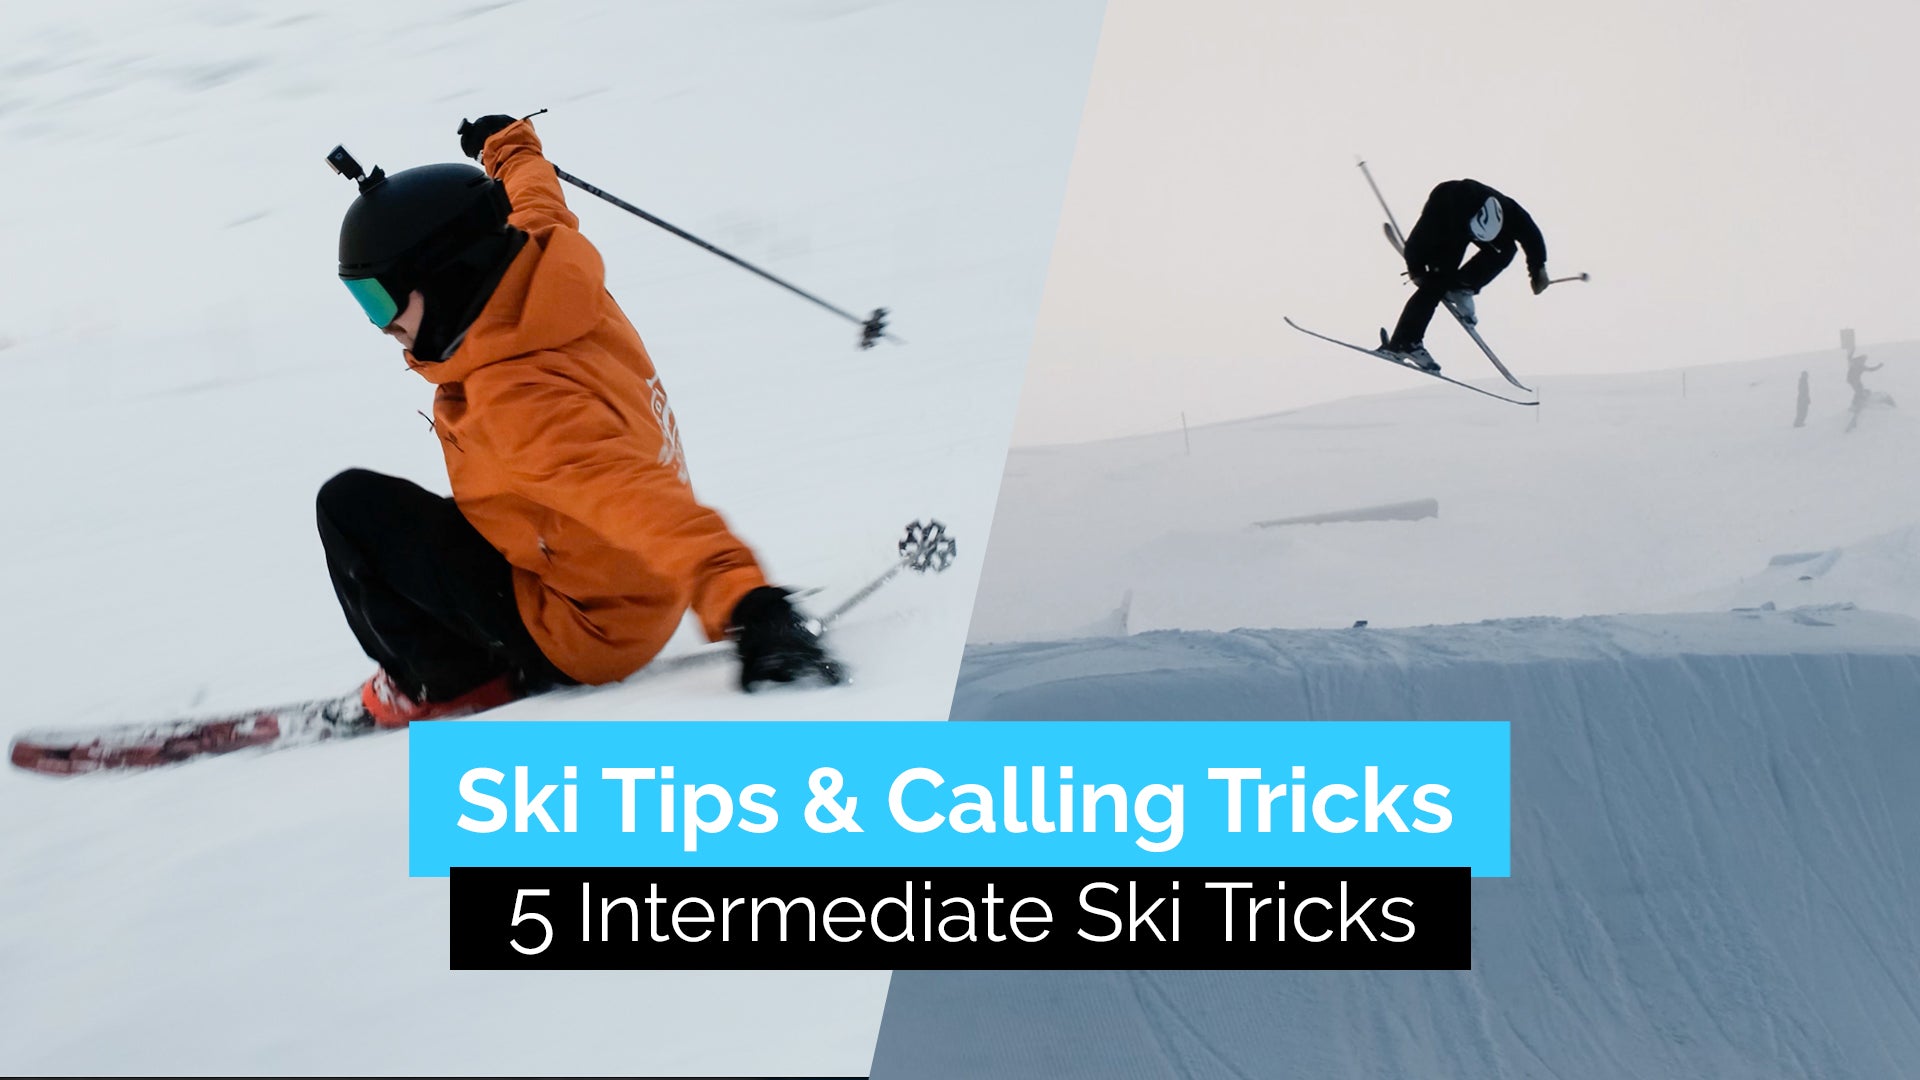 5 Intermediate Ski Tricks | Ski Tips & Calling Tricks